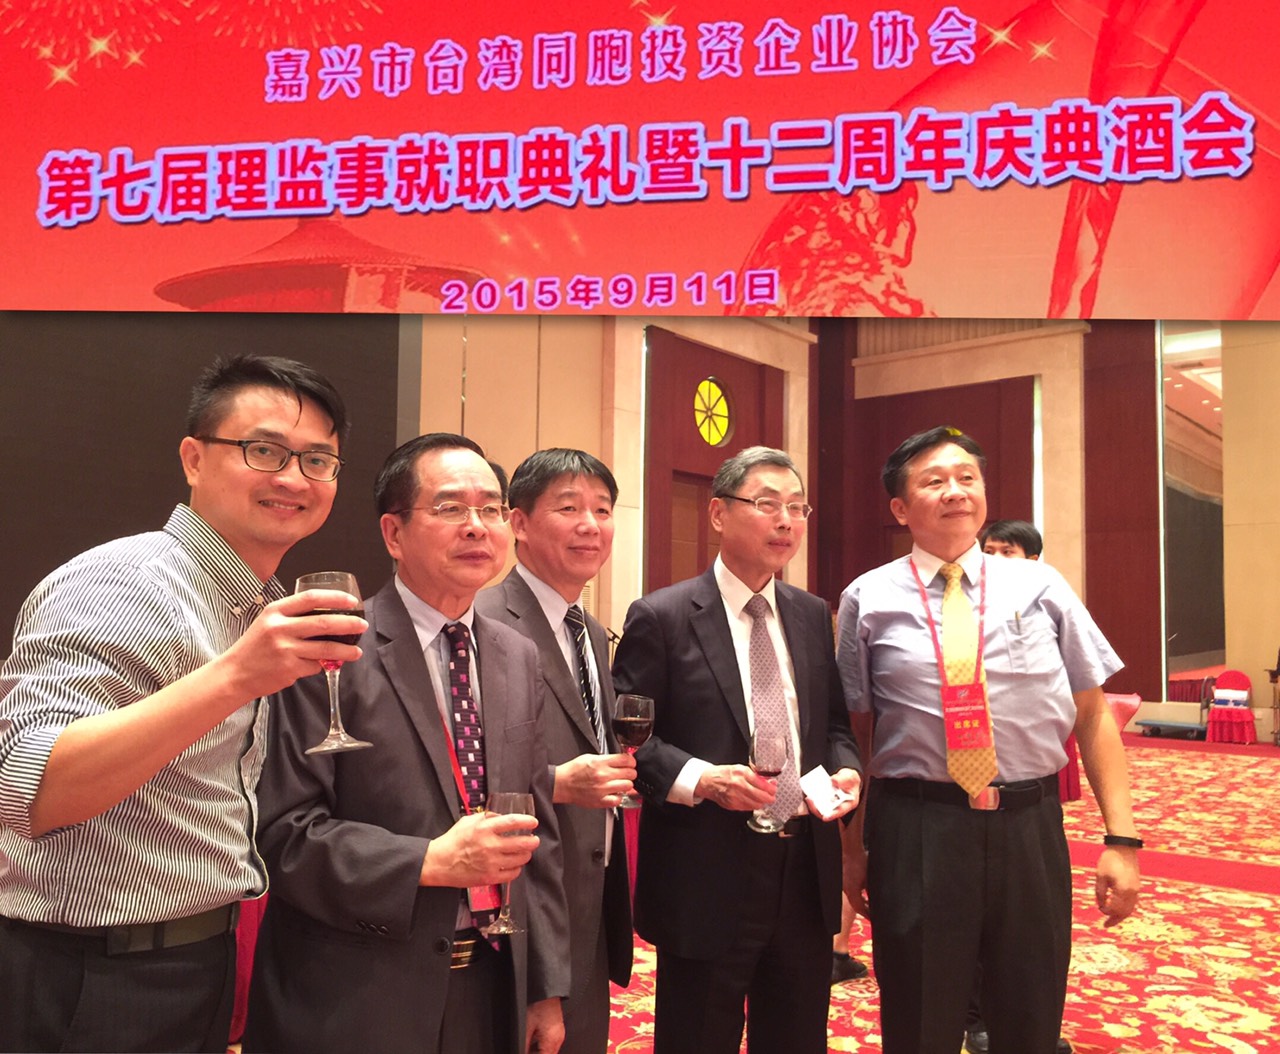 嘉興市台灣同胞投資企業協會正副會長就職典禮